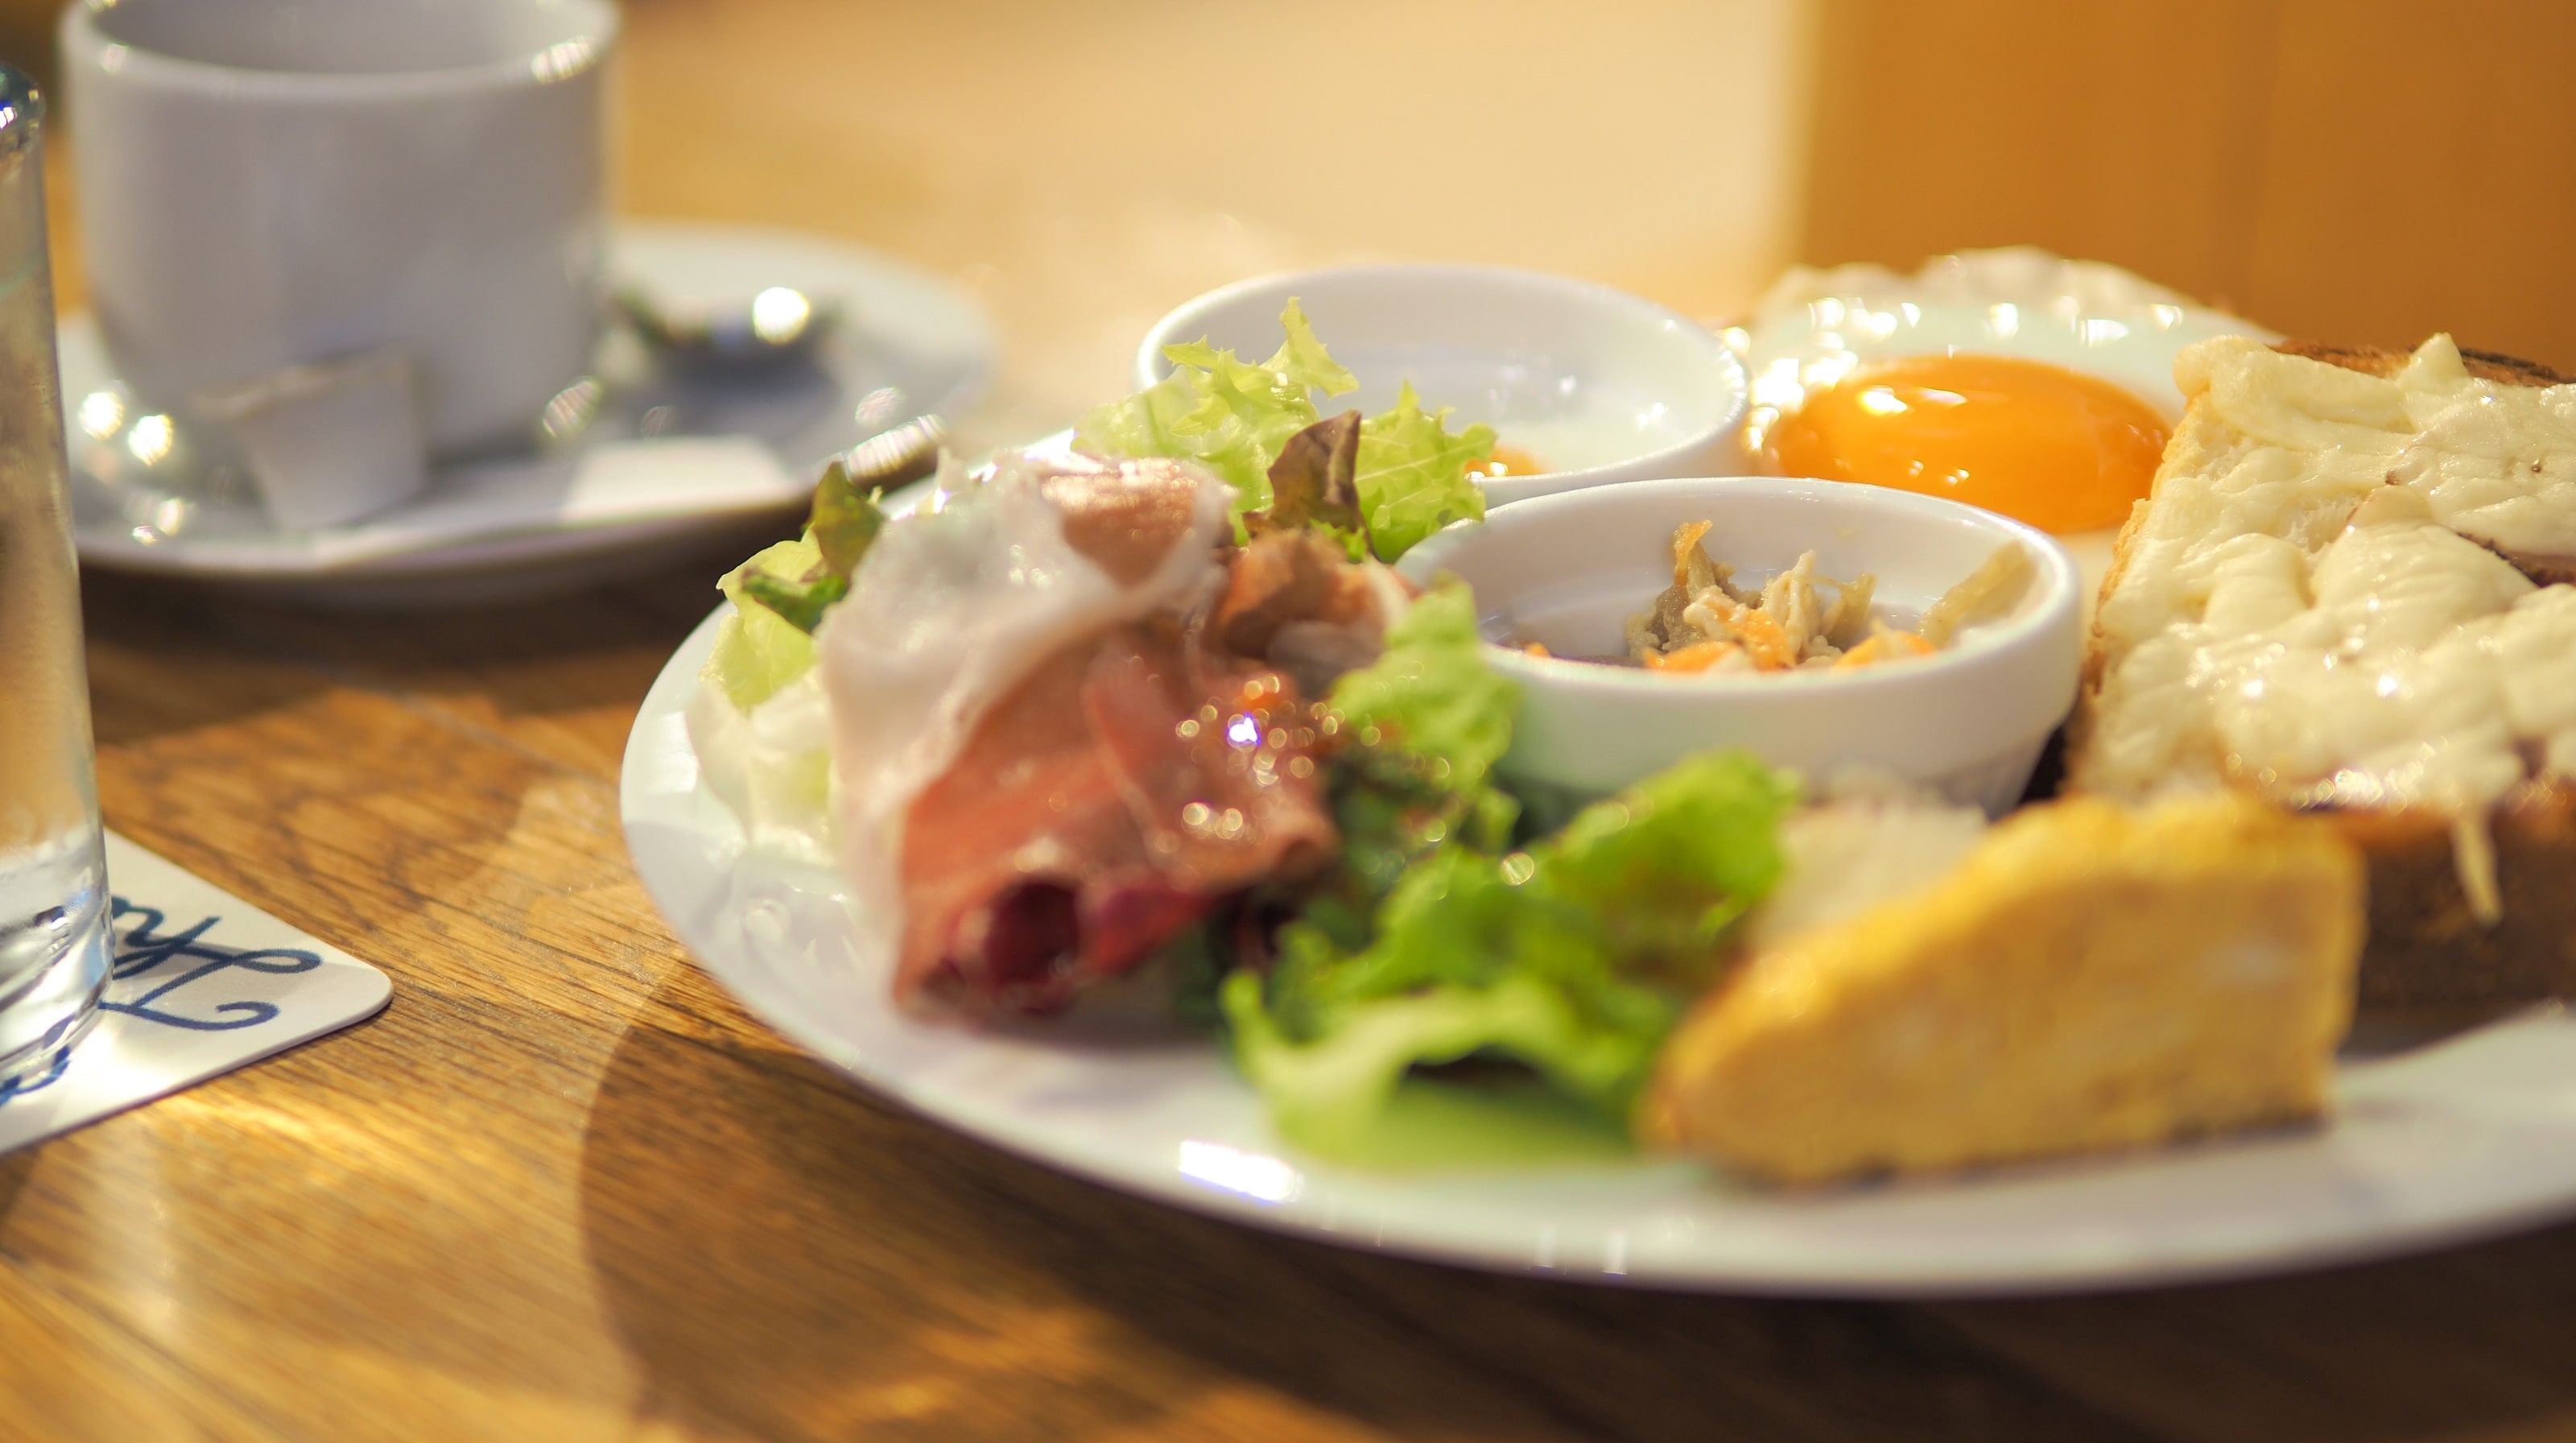 ■ Restaurant / Breakfast plate (image)